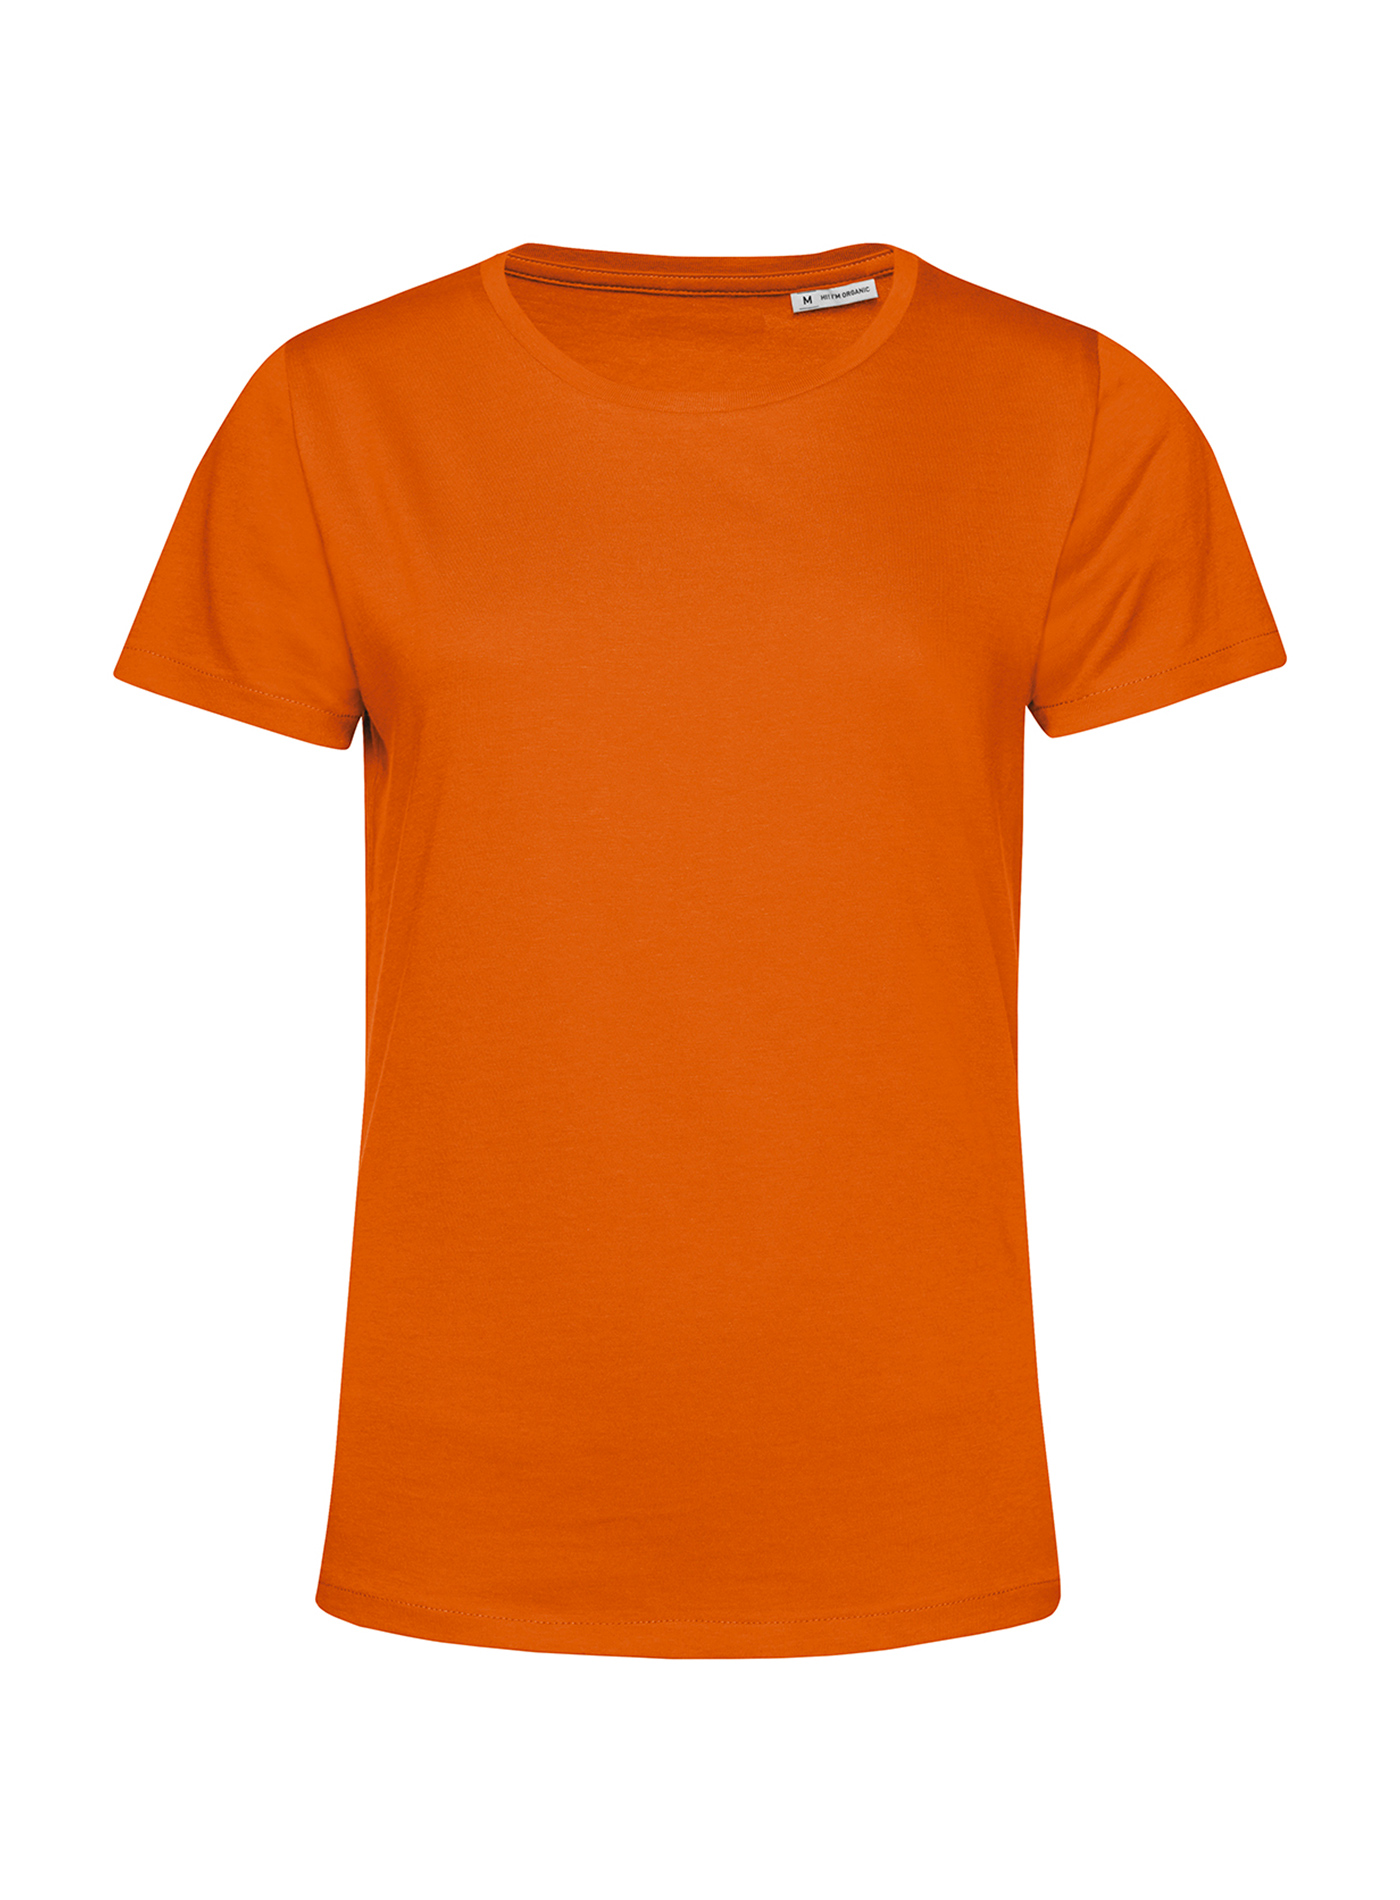 Dámské tričko B&C Collection Organic - Oranžová L